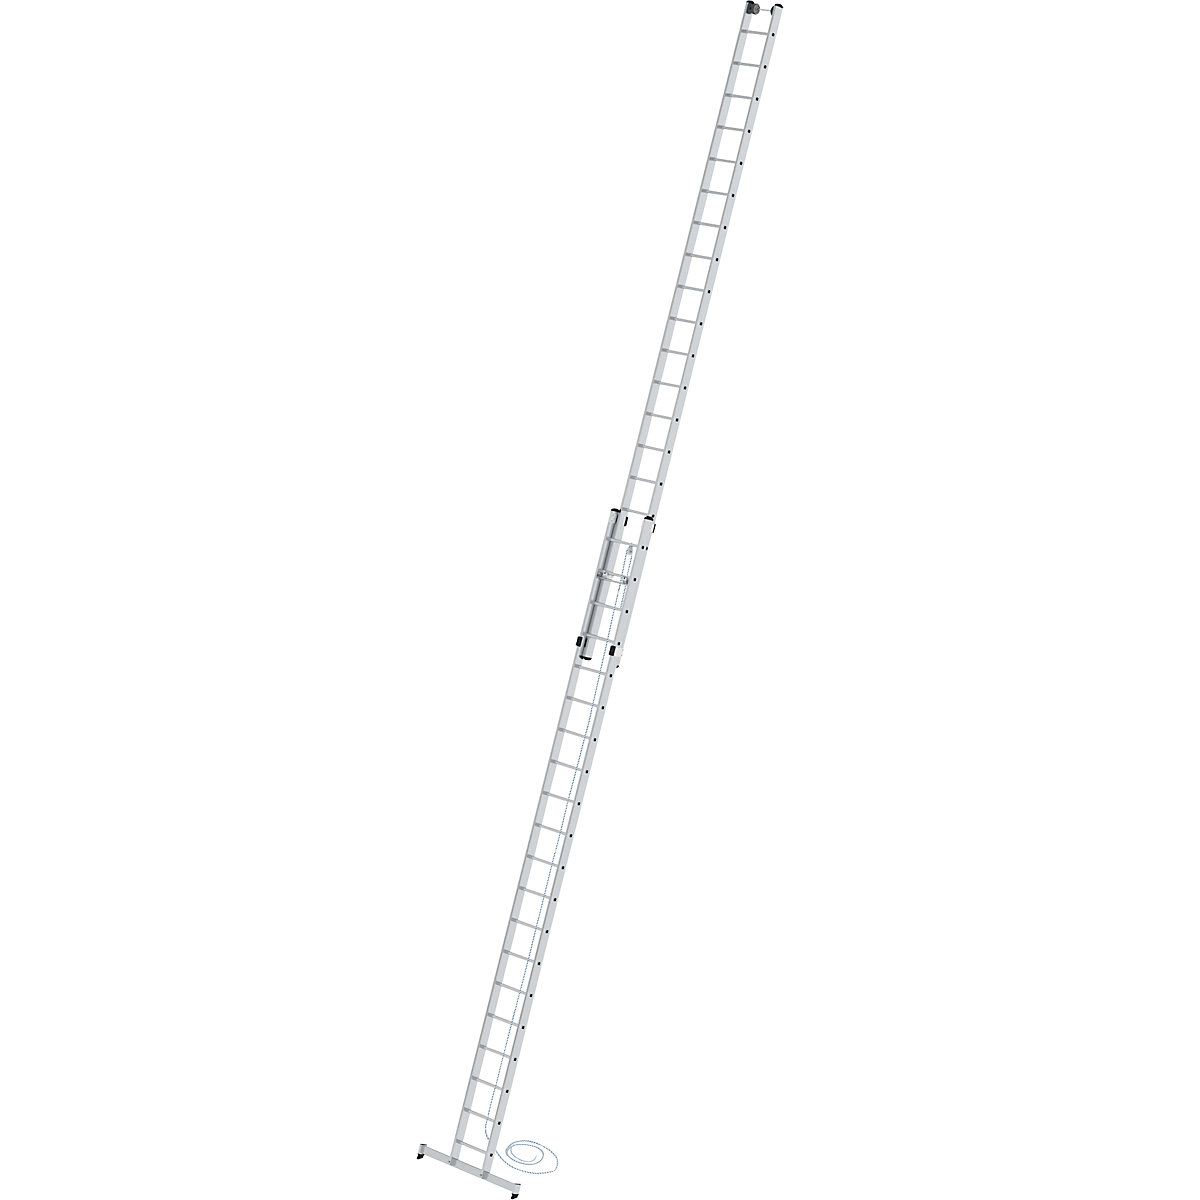 Výškově přestavitelný opěrný žebřík – MUNK, žebřík s lankem, 2dílný s příčníkem nivello®, 2 x 20 příčlí